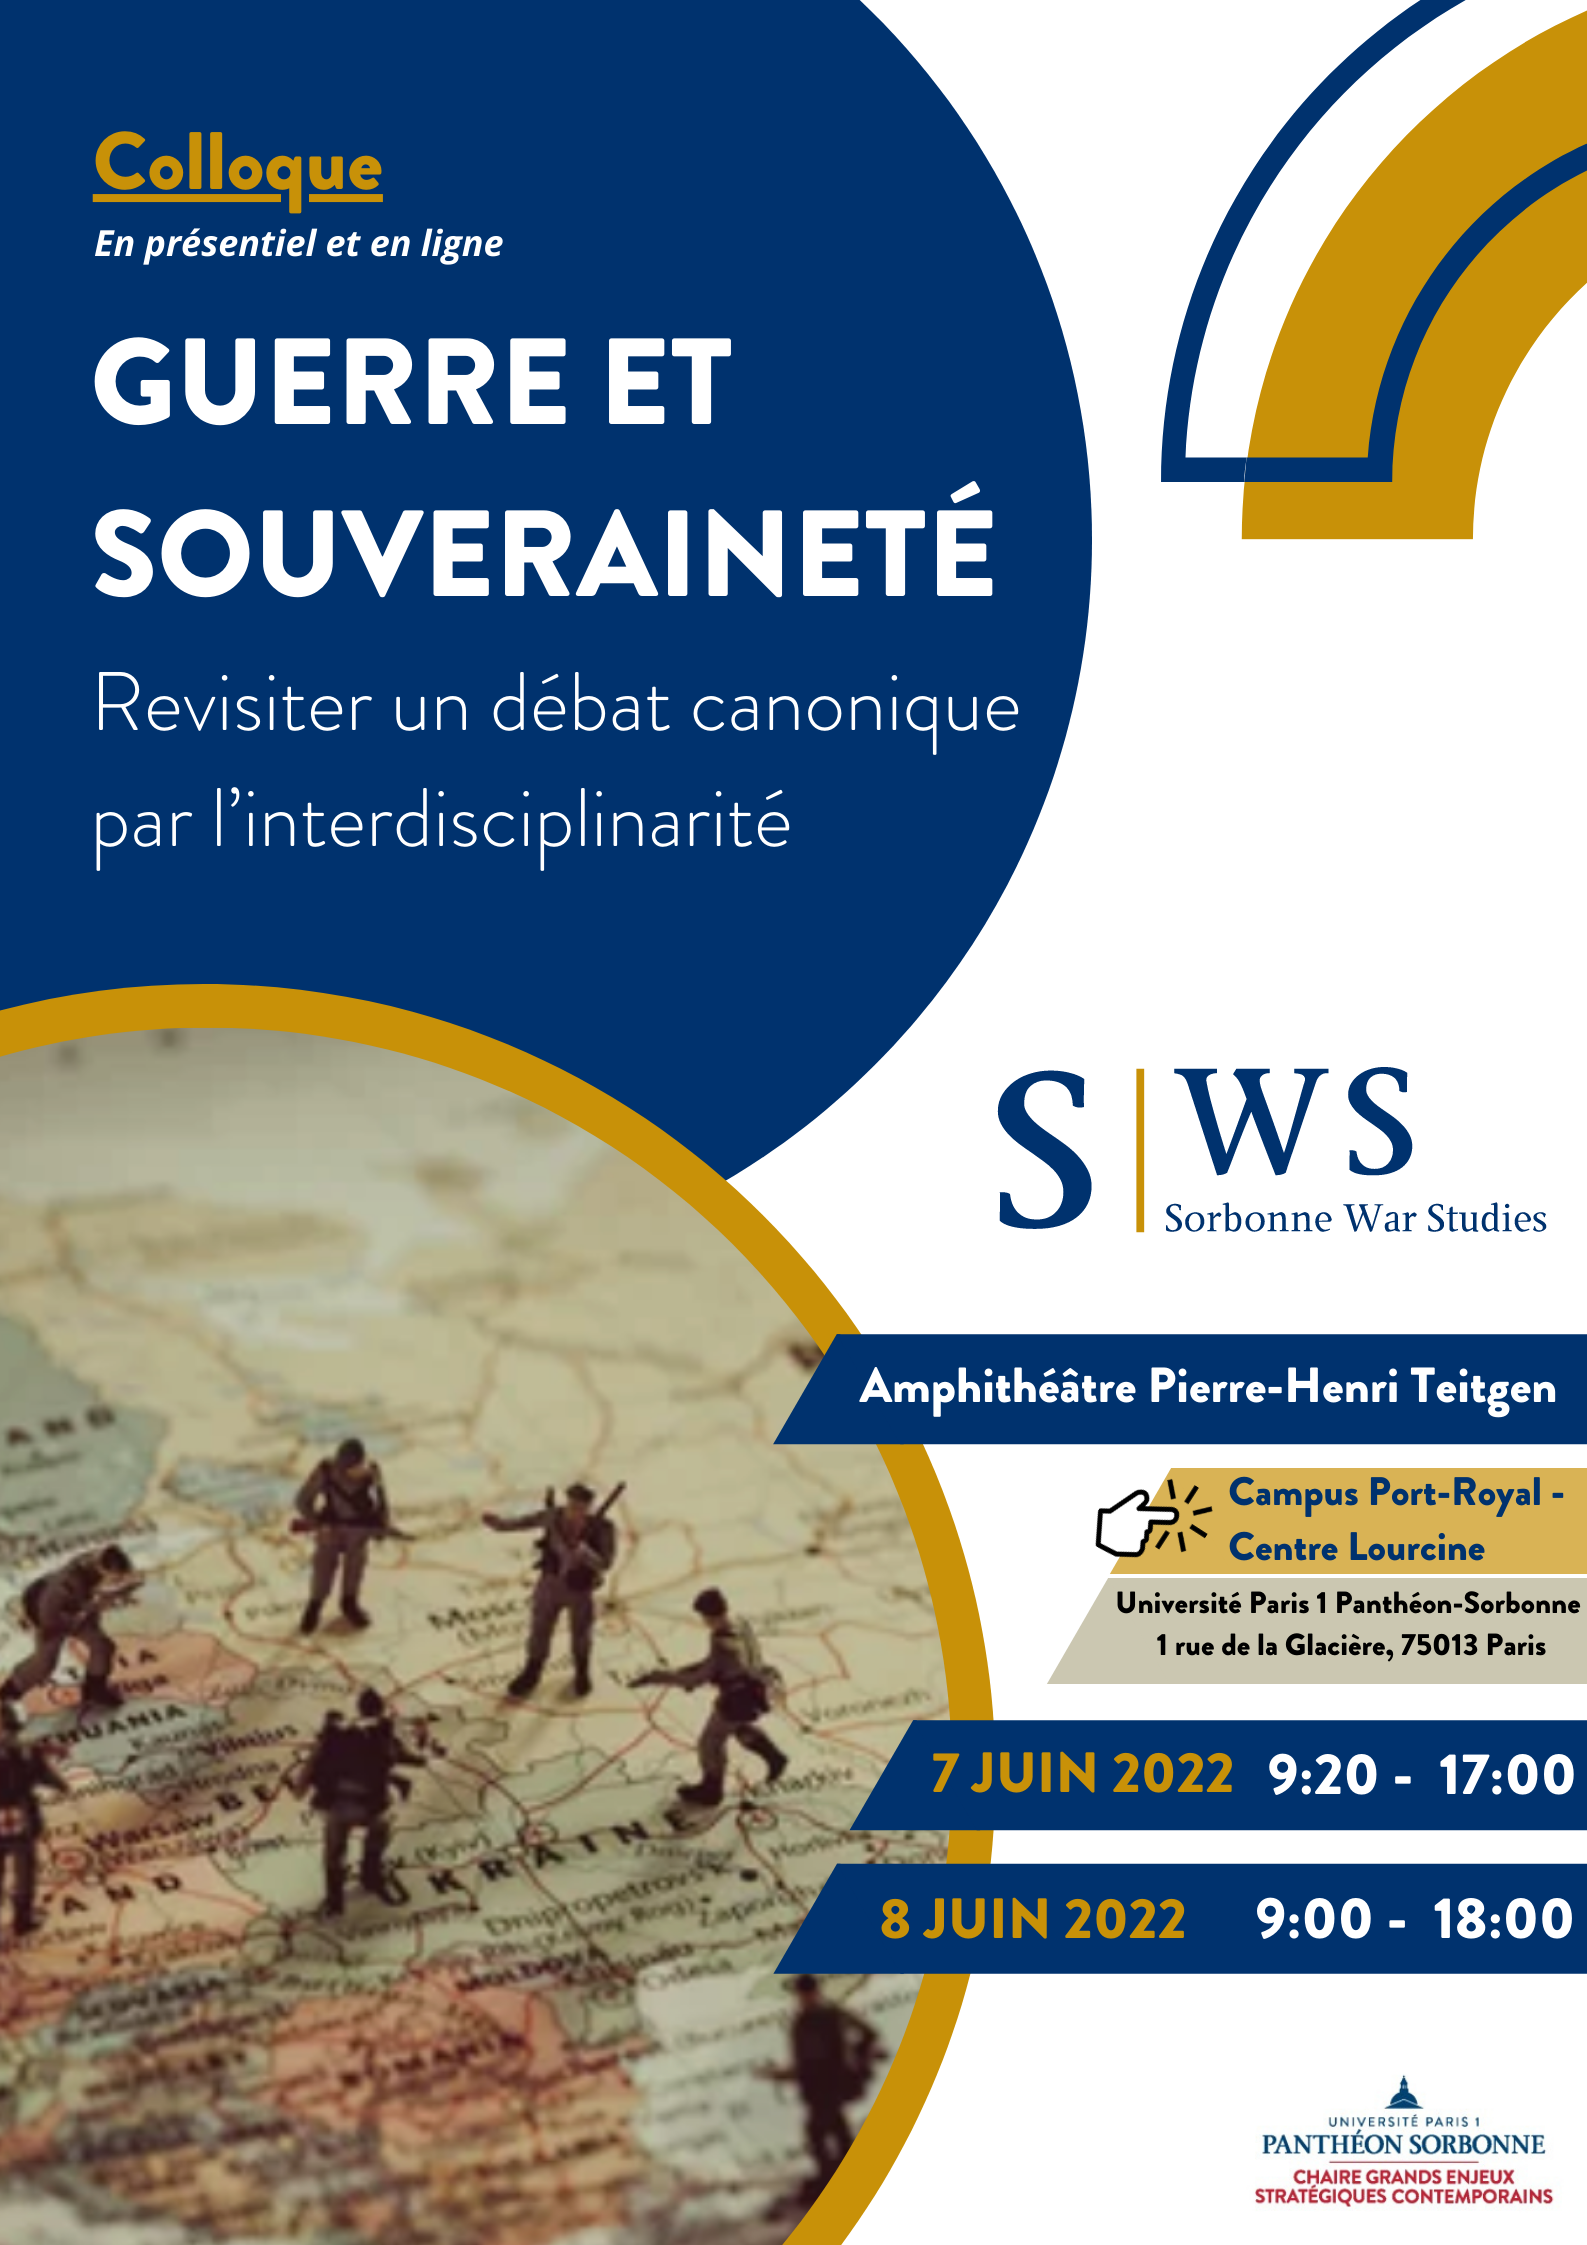 Programme Colloque Sorbonne War Studies